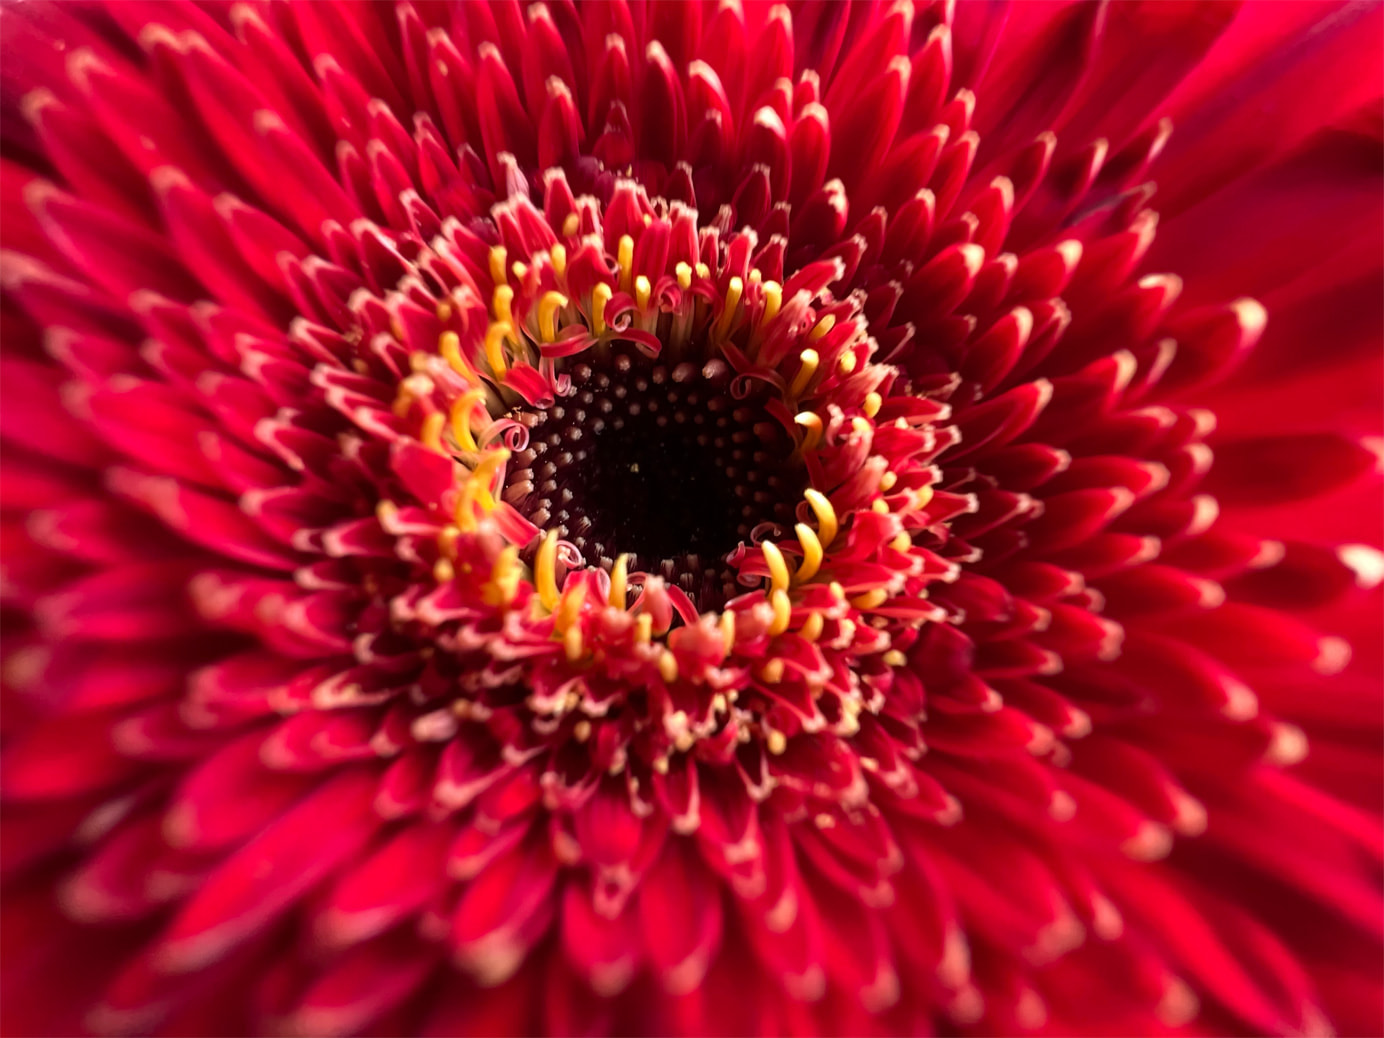 使用 iPhone 13 Pro 超广角镜头以微距模式拍摄的红花。